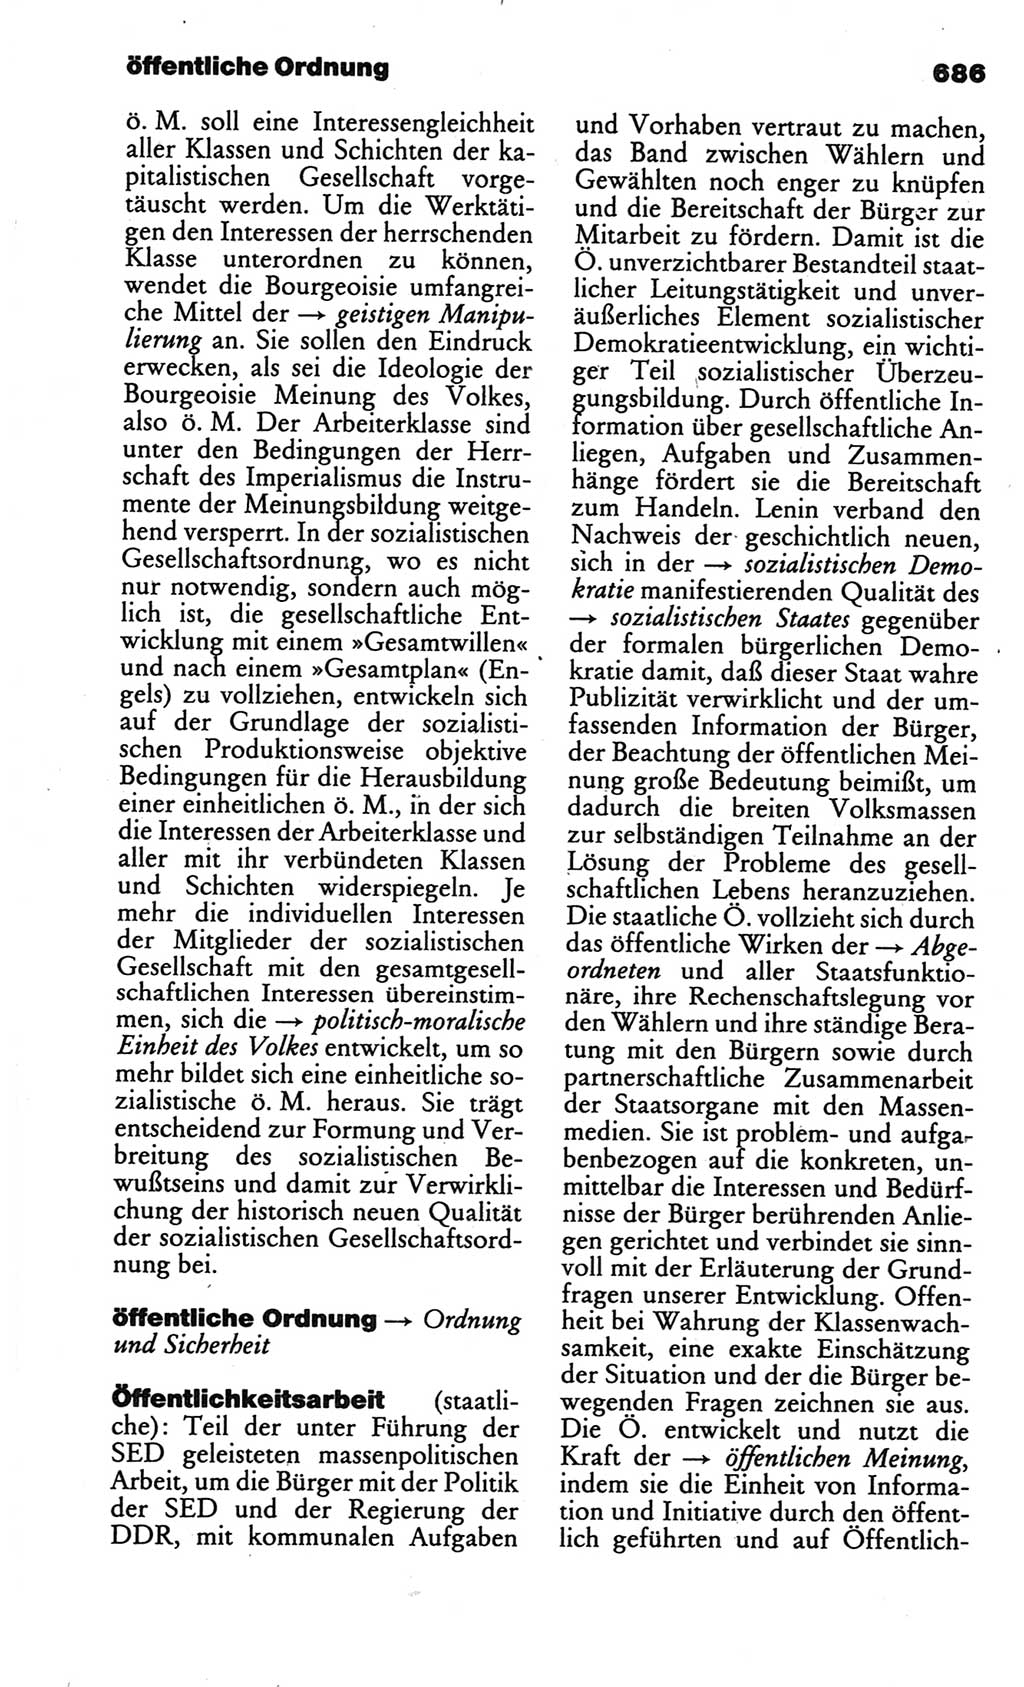 Kleines politisches Wörterbuch [Deutsche Demokratische Republik (DDR)] 1986, Seite 686 (Kl. pol. Wb. DDR 1986, S. 686)